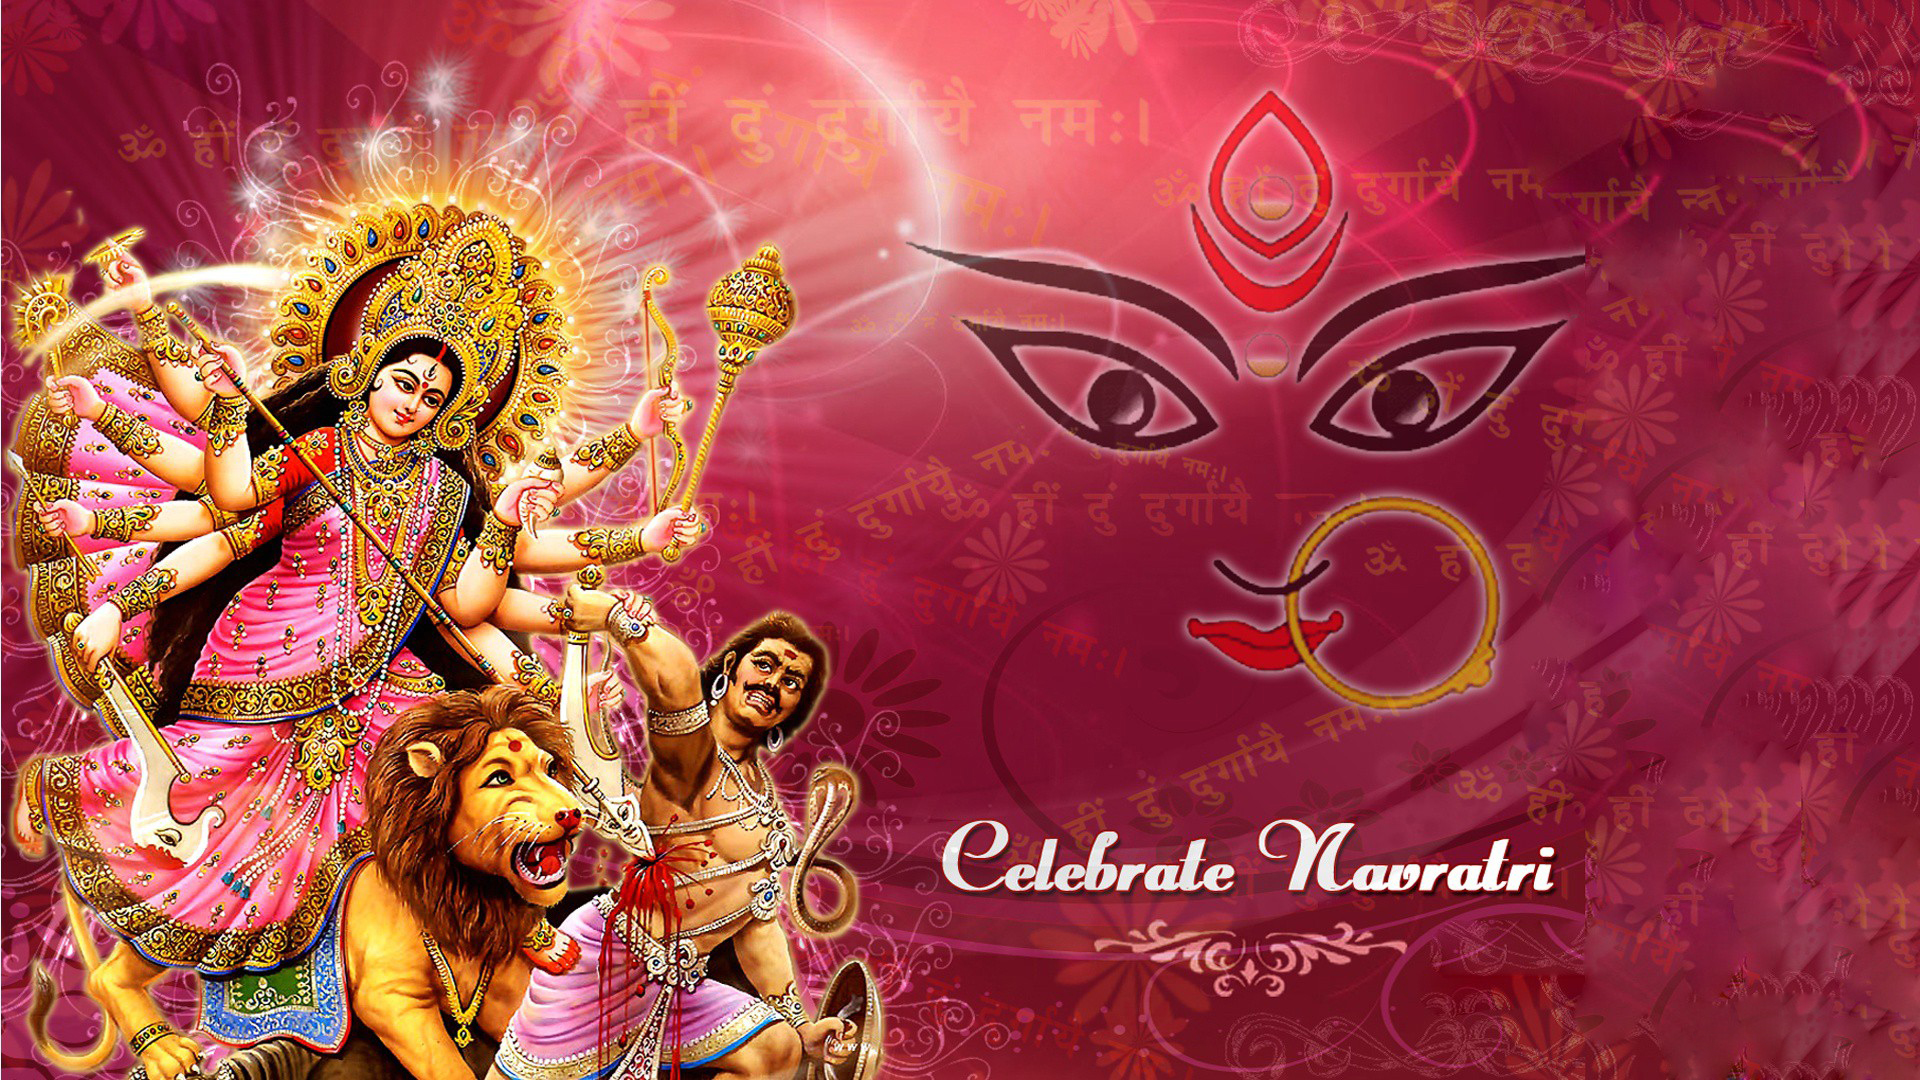 Navratri Maa Durga HD Images, Wallpapers, and Photos (Free ...